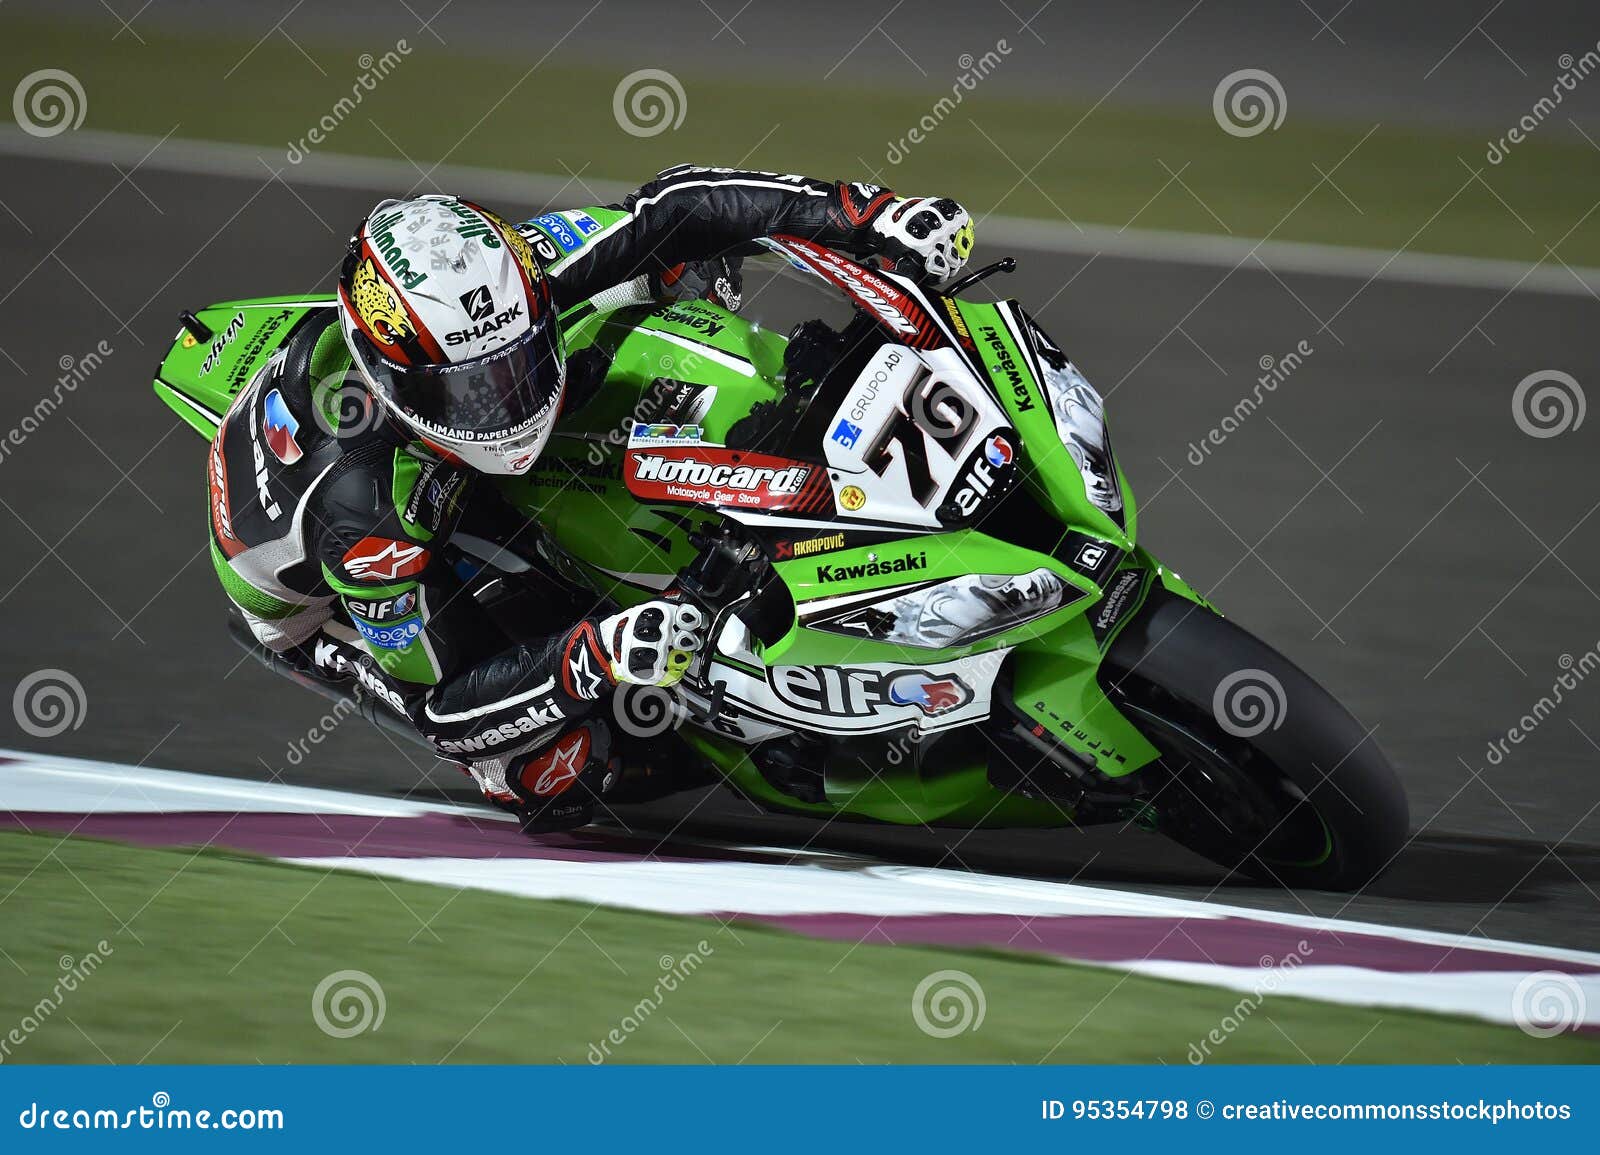 Green And #76 Kawasaki Motogp Rider Picture. Image: 95354798